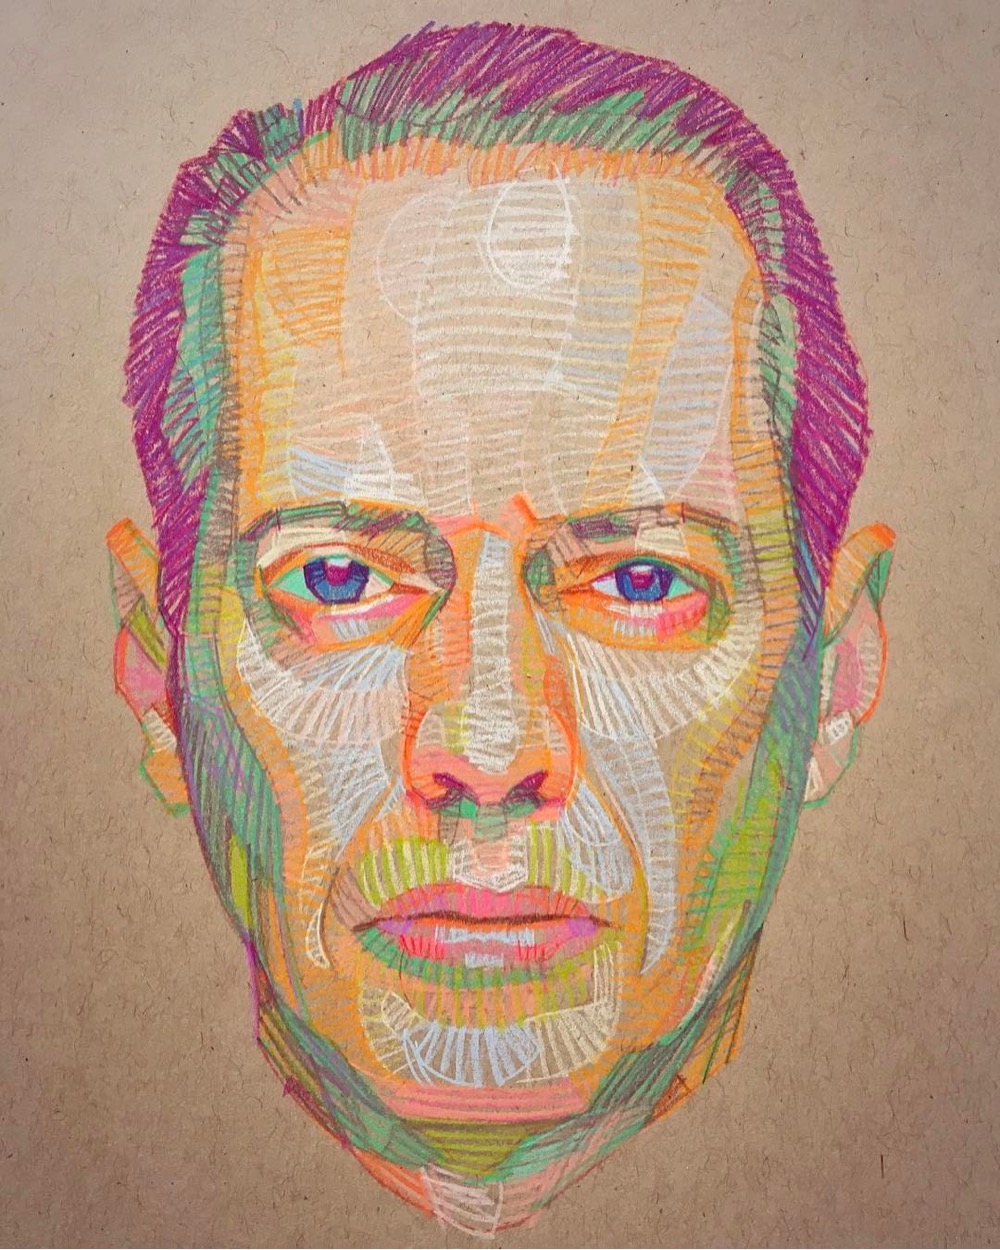 colorful portrait of Steve Buscemi